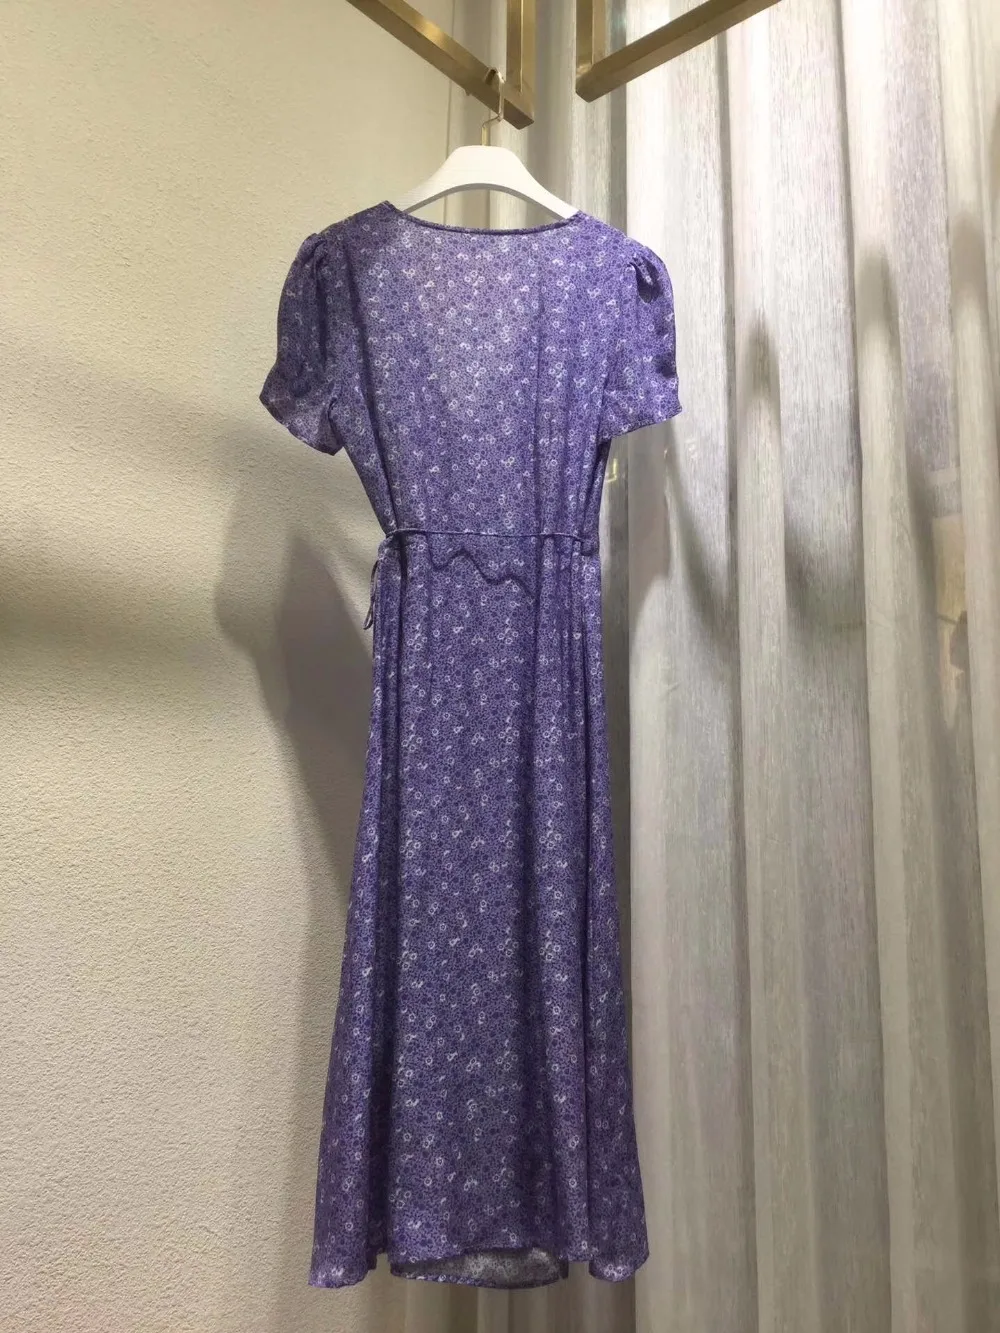 Шелк бирюзово-Фиолетовая Дымка Лаванда Печать Глубокий v-образный вырез короткий рукав женское сексуальное простое длинное платье средней длины с запахом